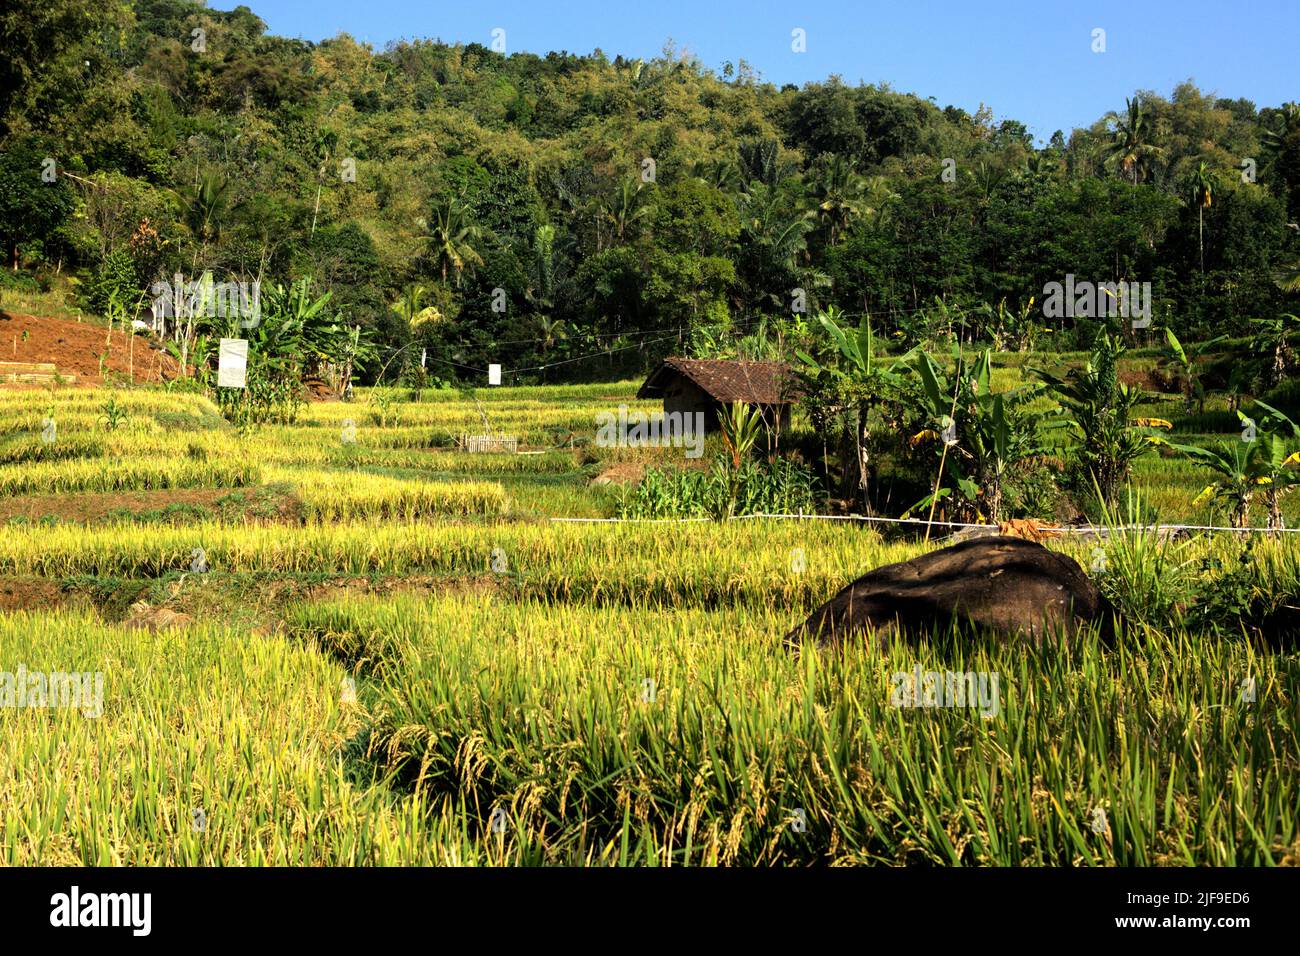 Paysage de rizières en terrasses à Sumedang, Java Ouest, Indonésie. La culture du riz paddy est une source importante d'émissions et elle augmente, sur laquelle l'Asie est identifiée comme responsable de 89% des émissions mondiales de la culture du riz, selon le Groupe d'experts intergouvernemental sur l'évolution du climat (GIEC) dans son rapport de 2022. Banque D'Images